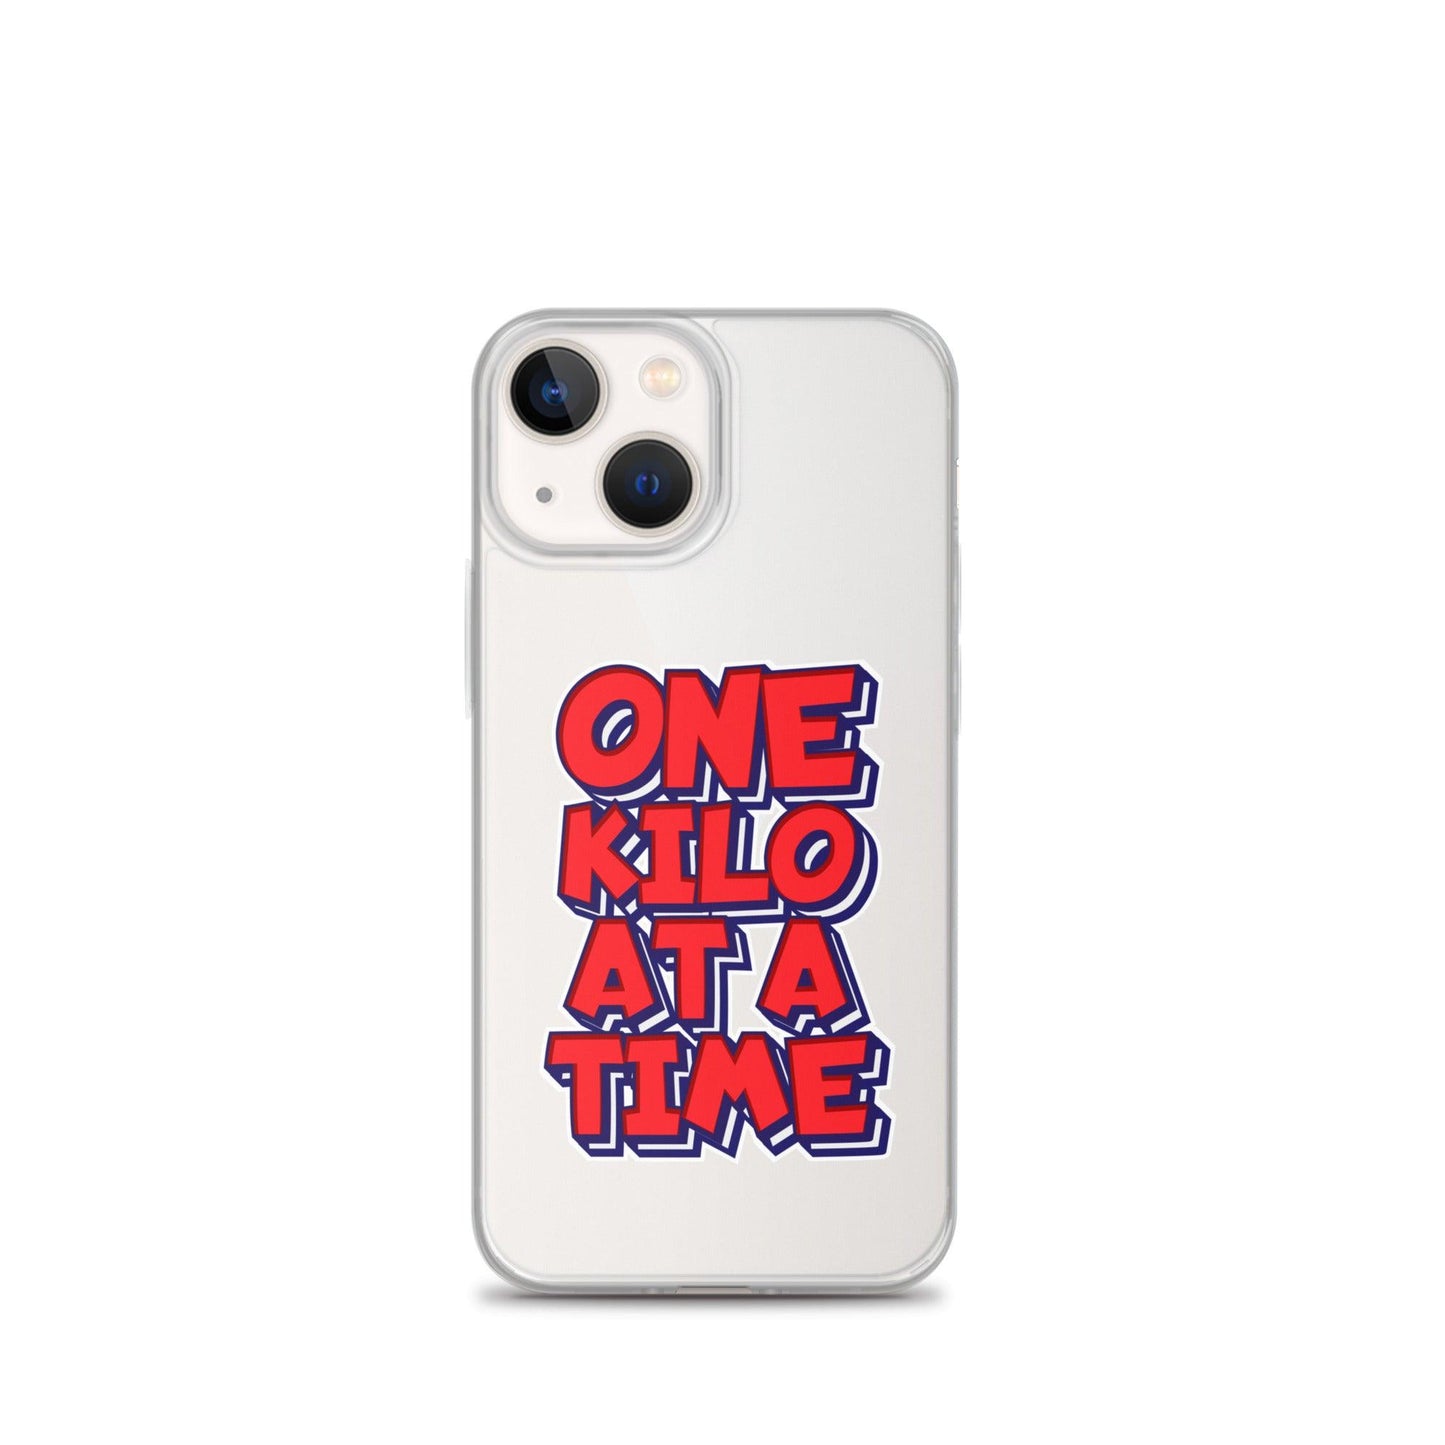 CJ Cummings “Essential” iPhone Case - Fan Arch